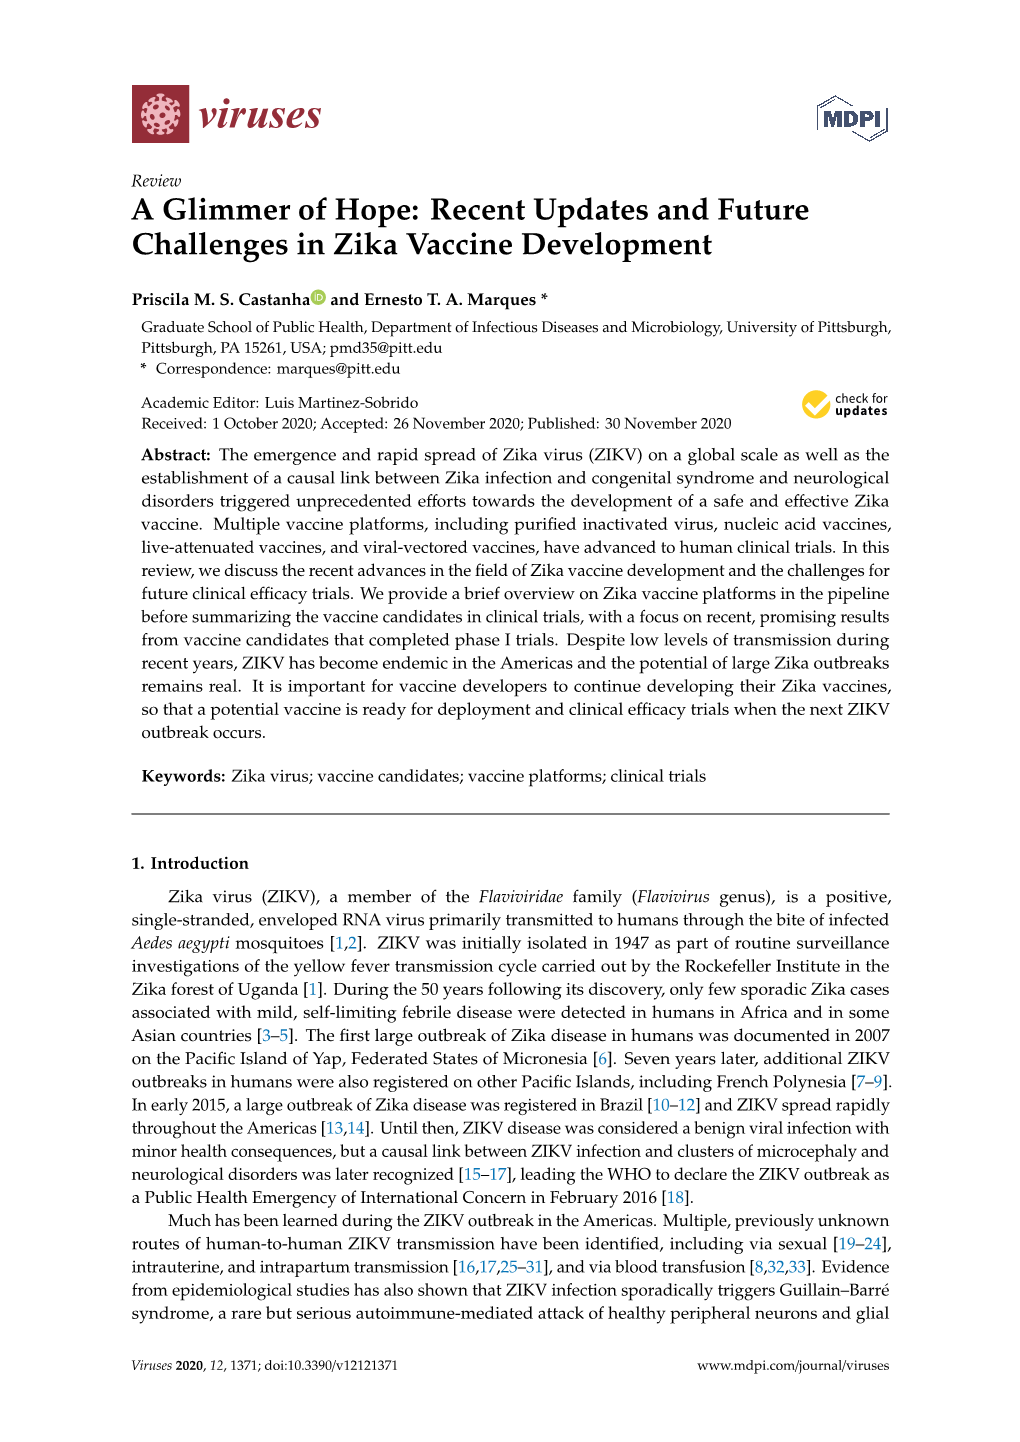 Recent Updates and Future Challenges in Zika Vaccine Development